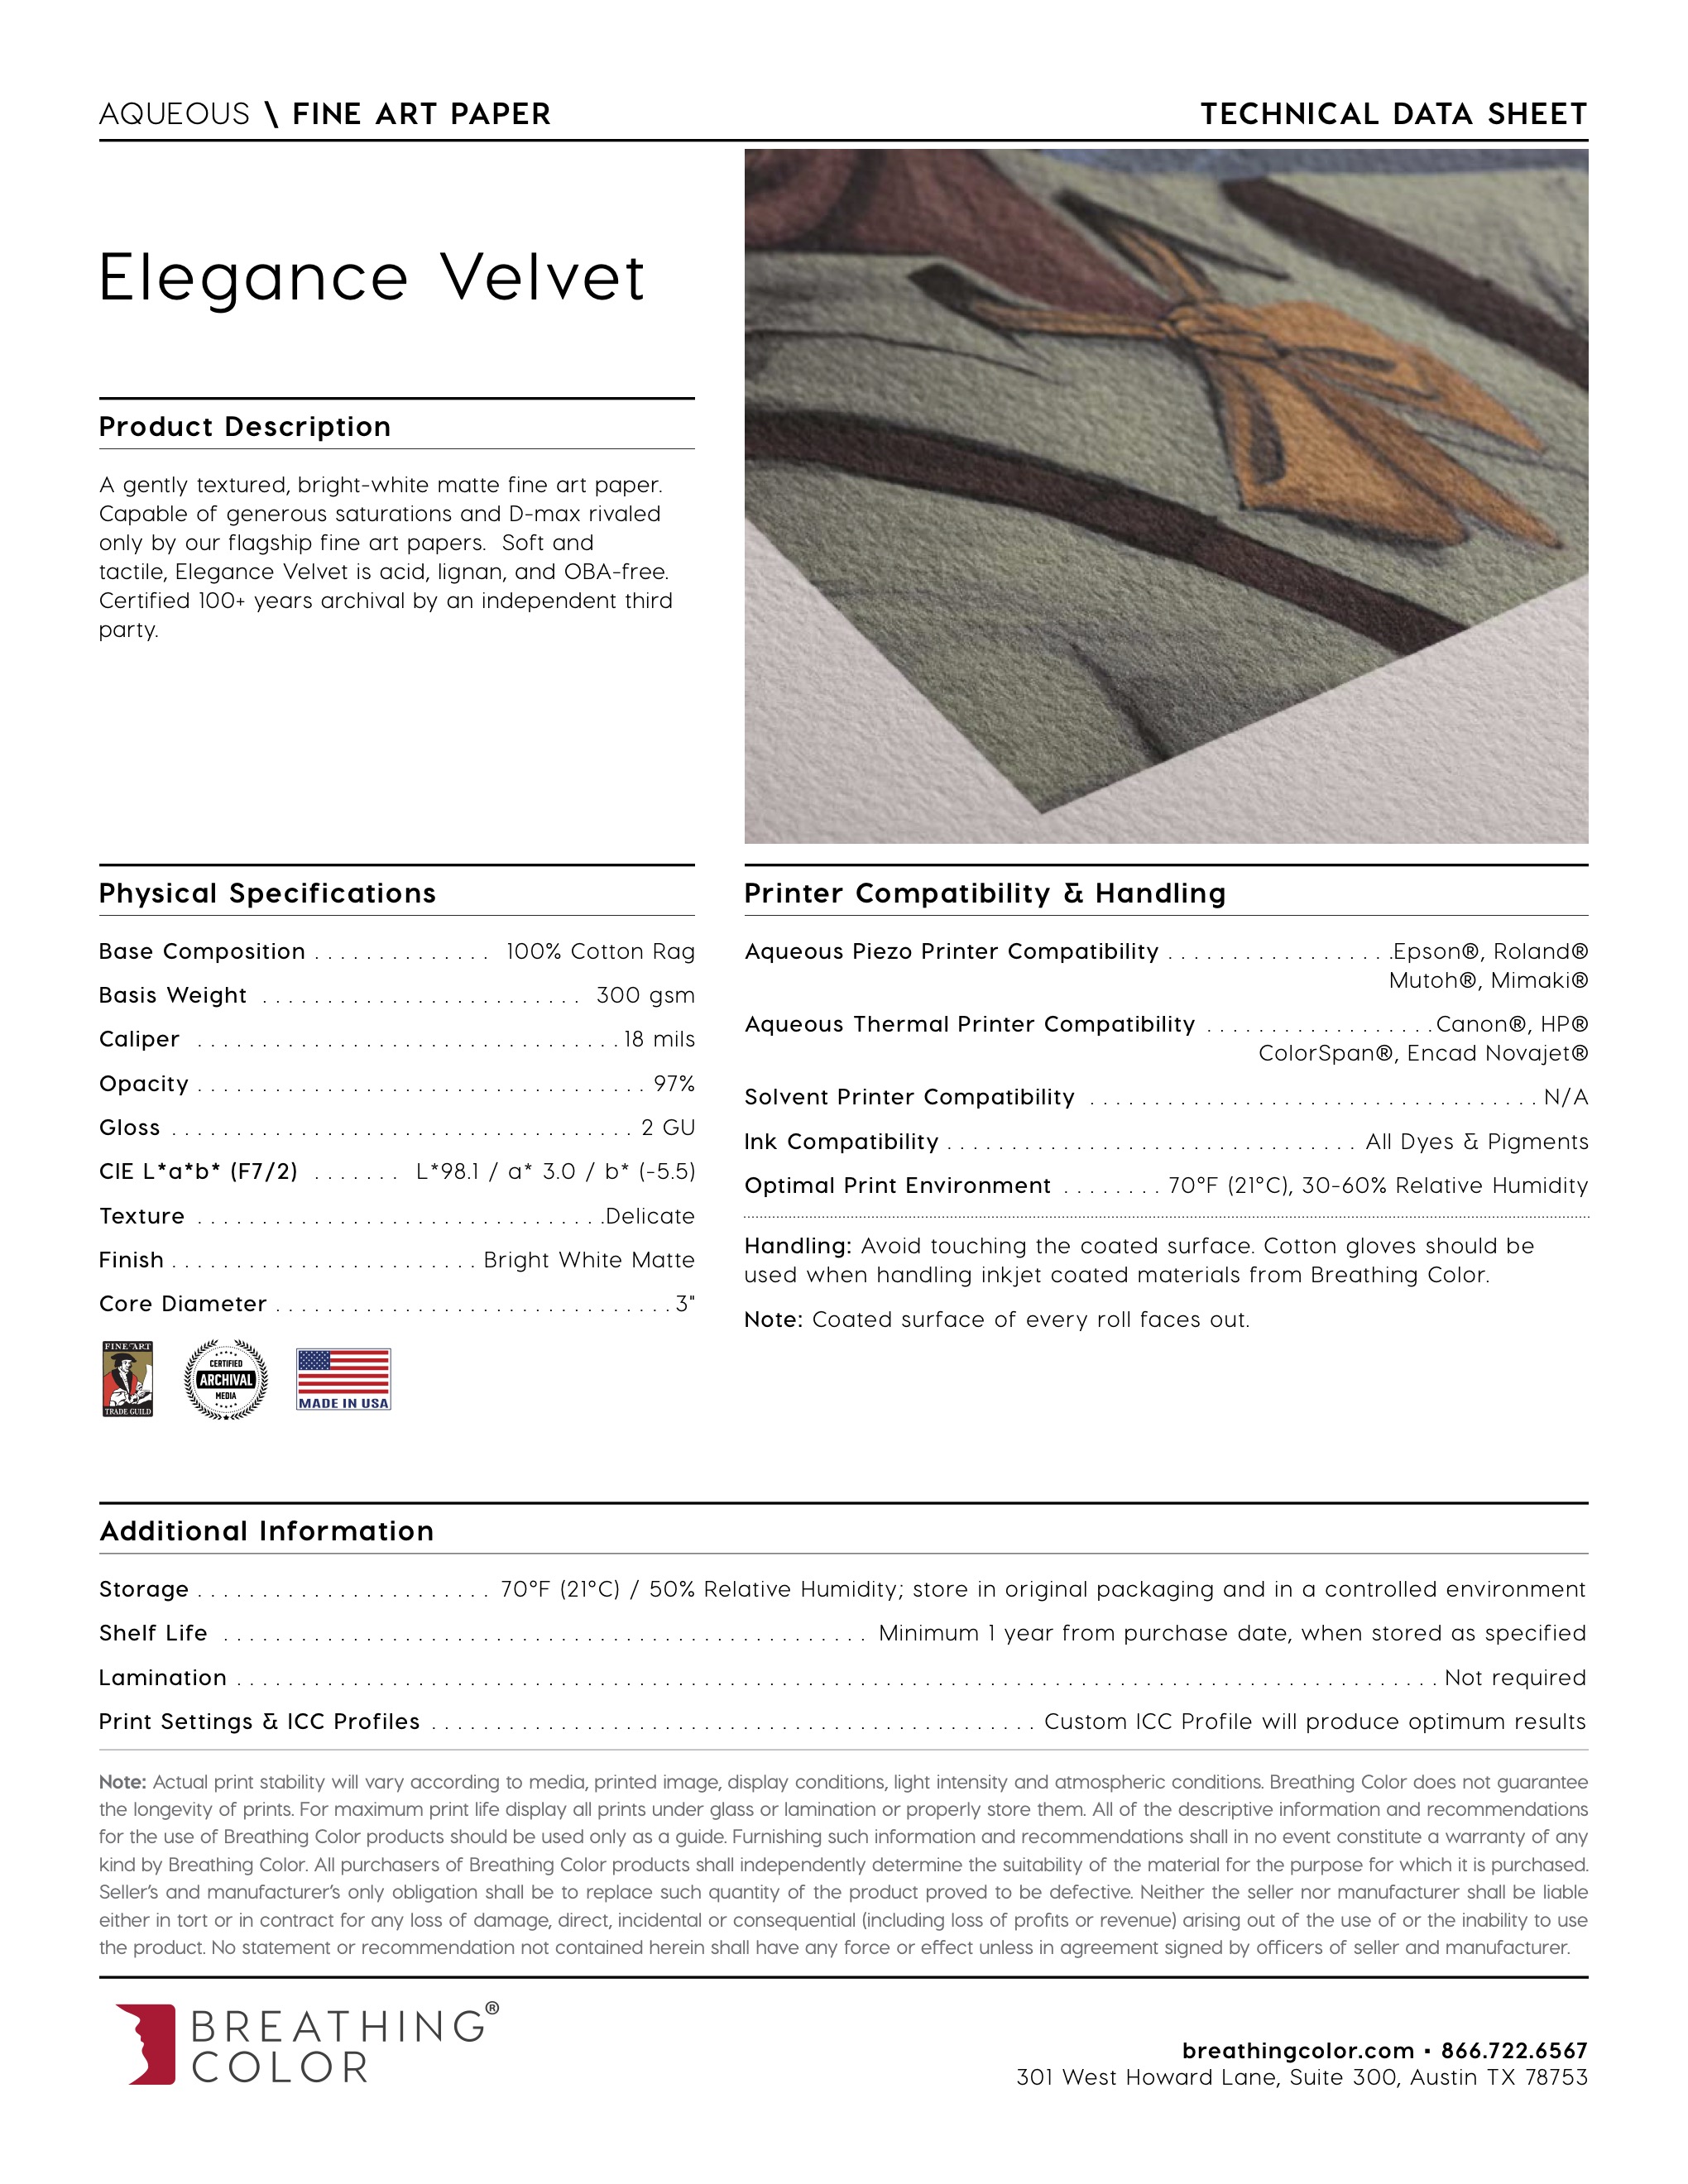 Elegance Velvet - Fine Art Paper- BreathingColor